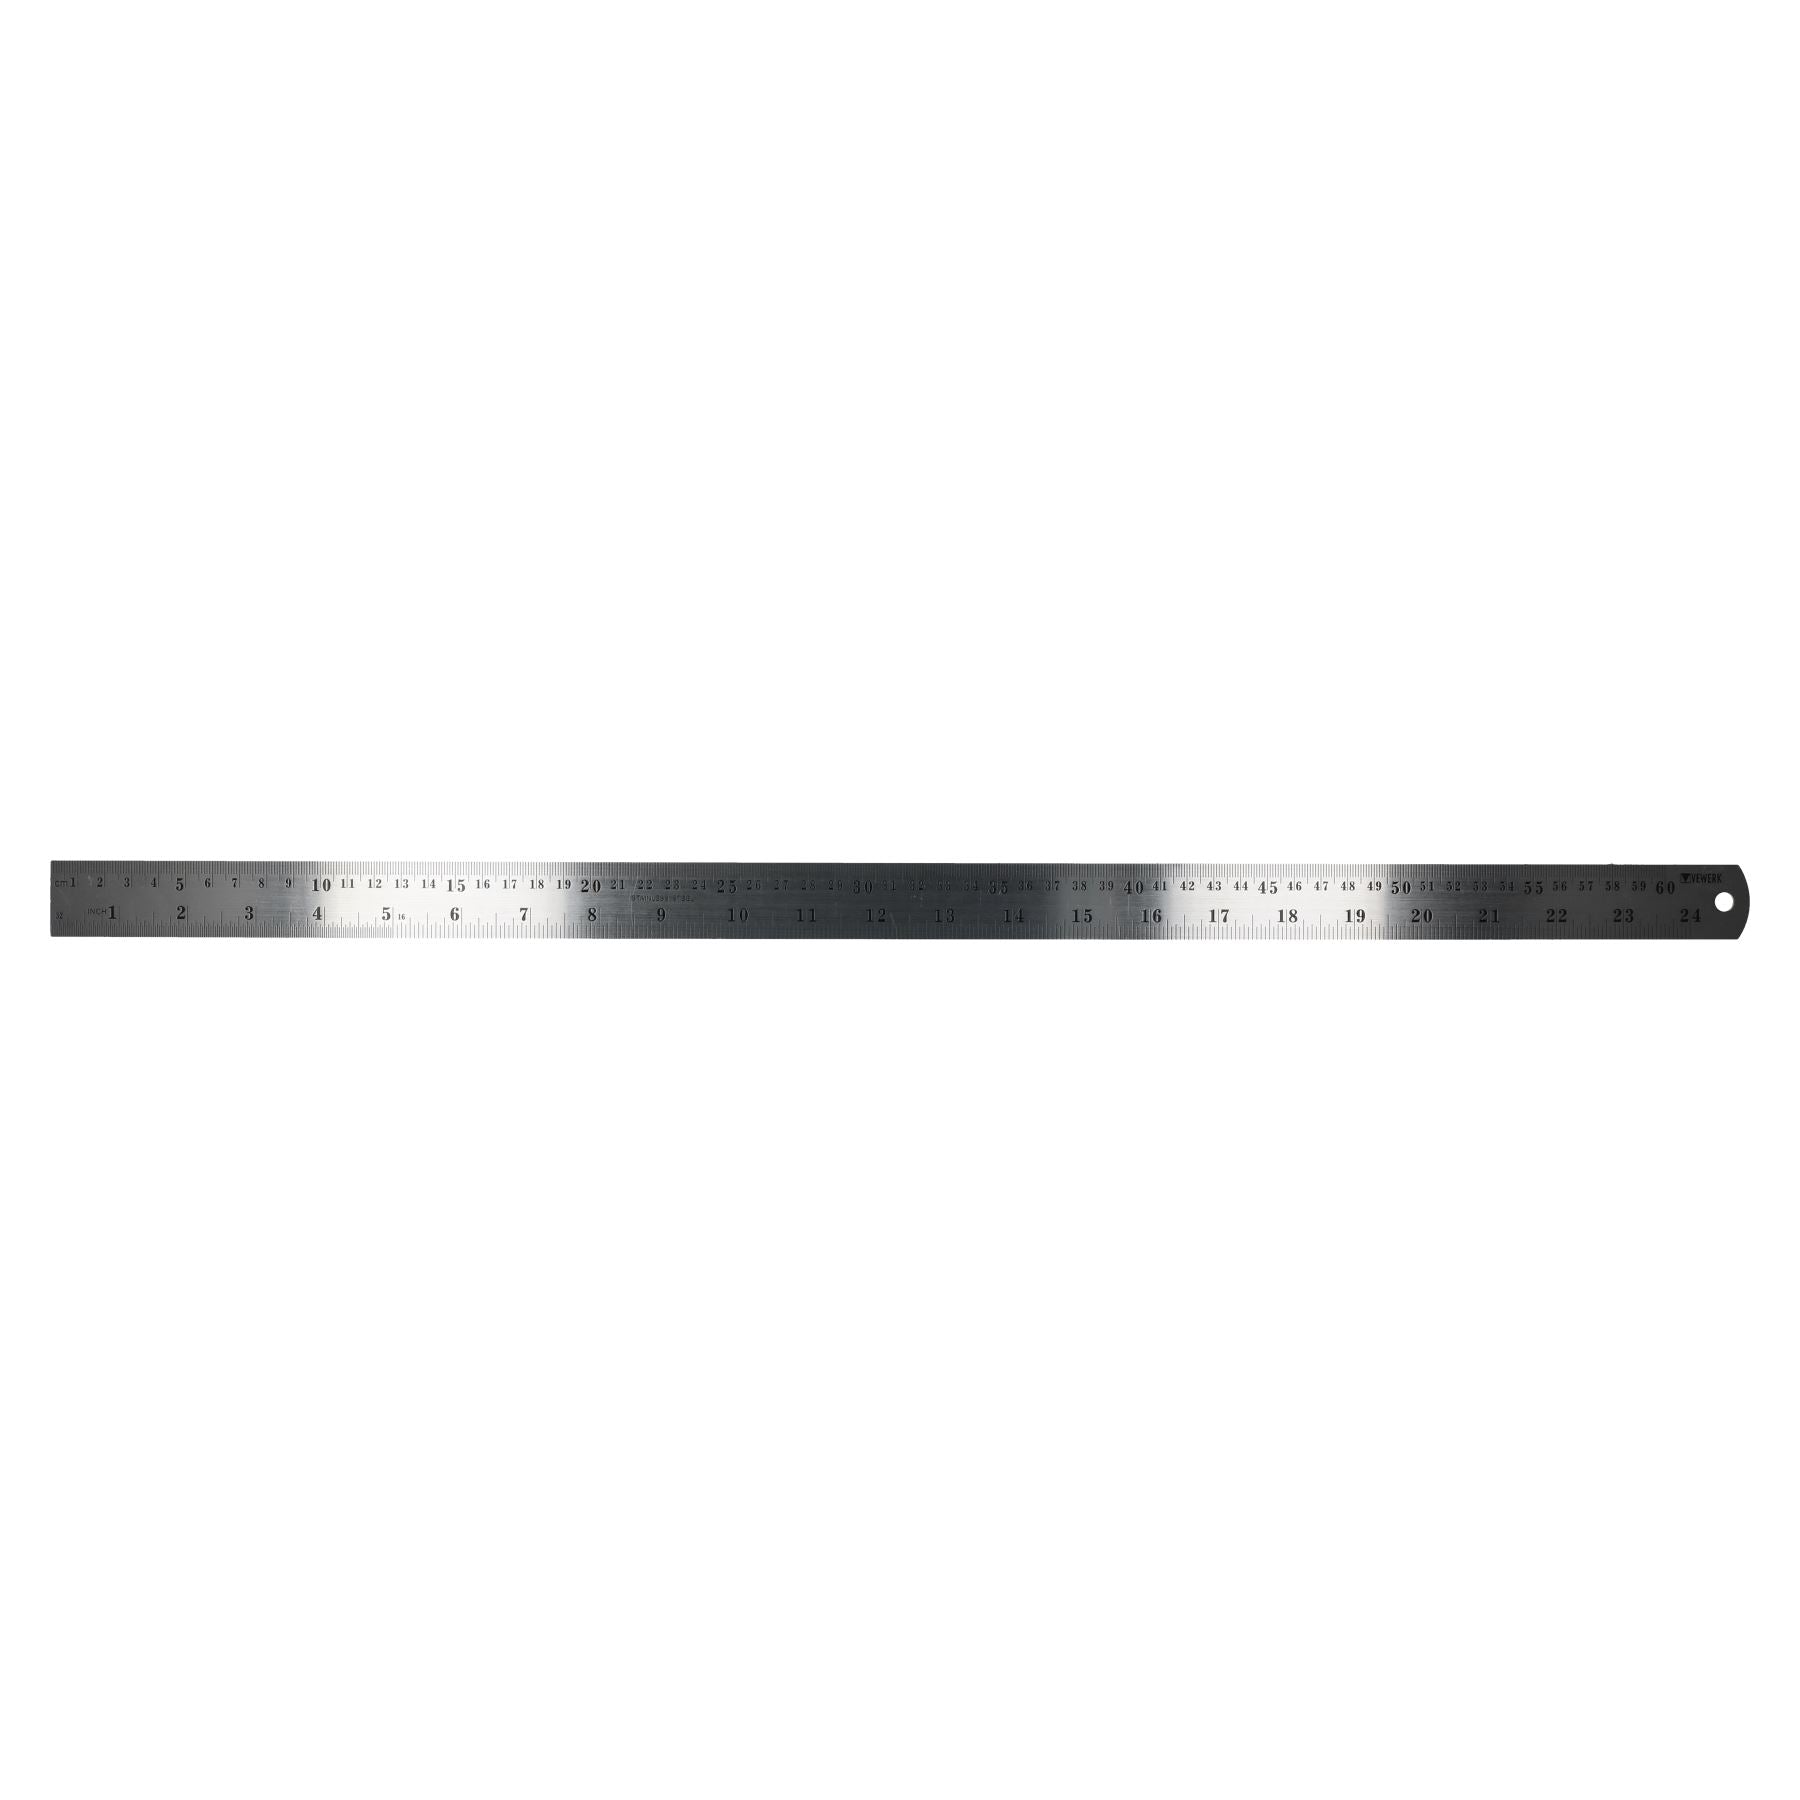 24" / 600mm Stainless Steel Ruler Imperial Metric Markings Measuring Measure